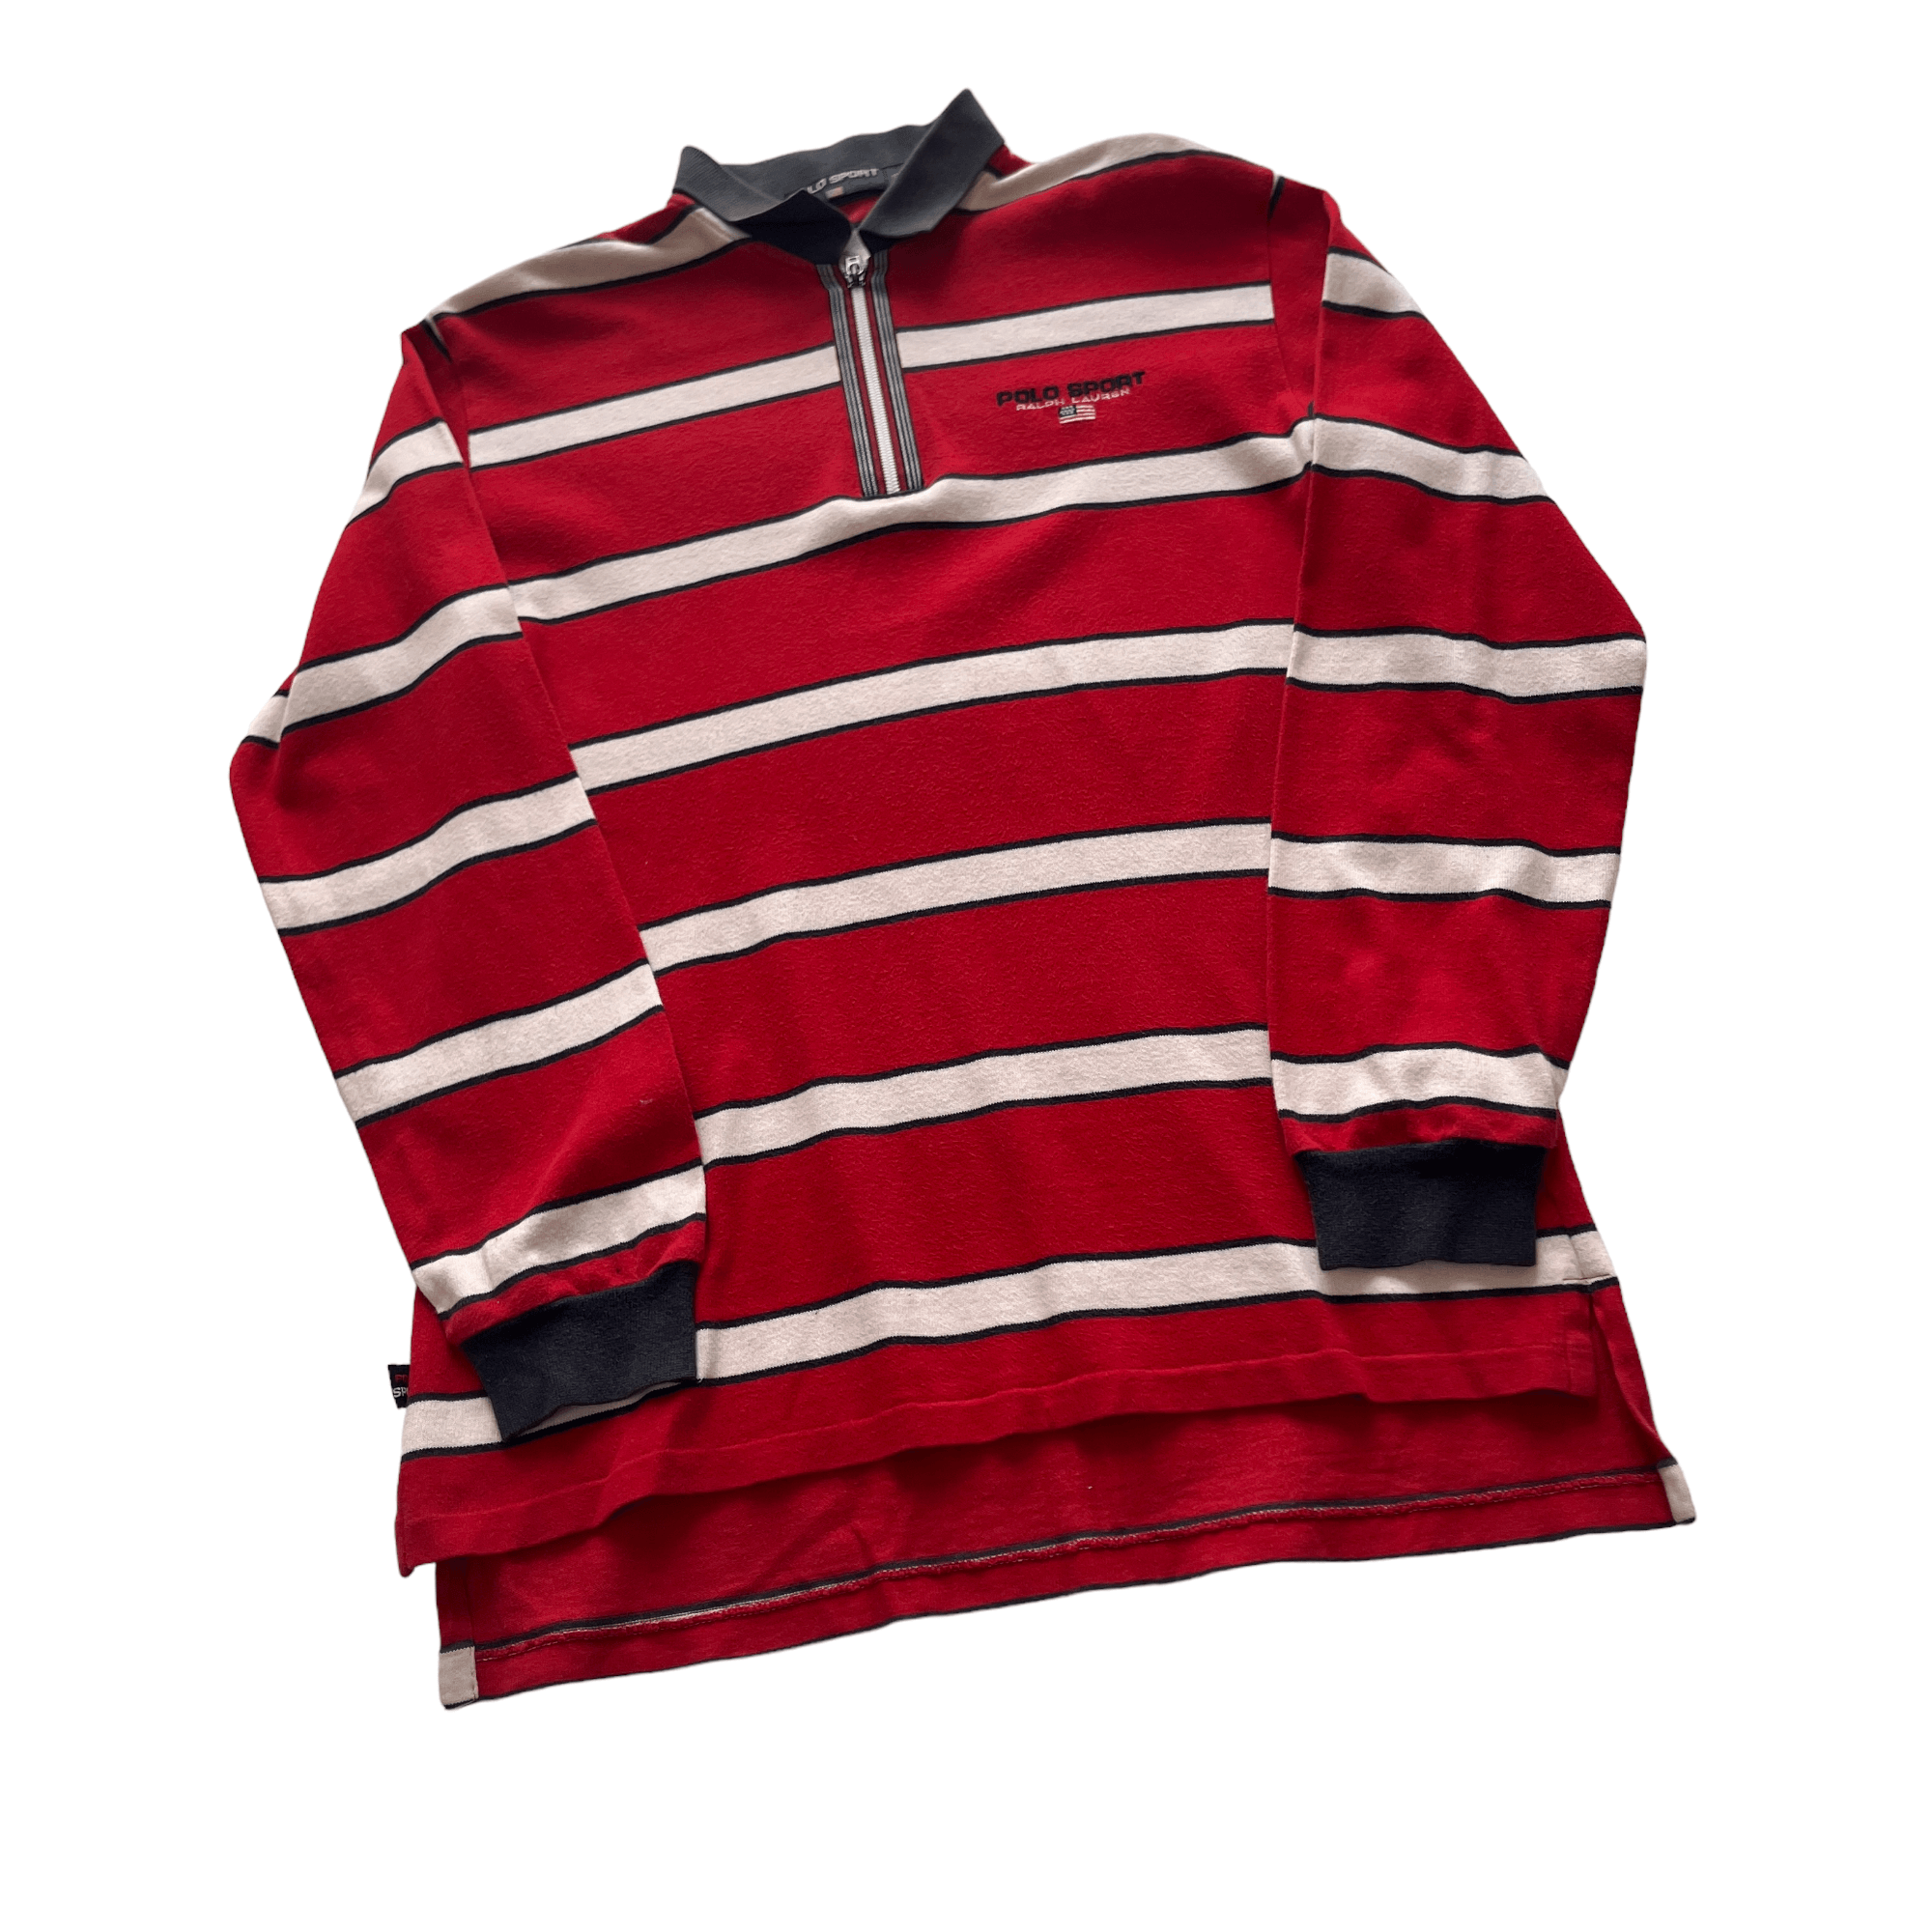 Vintage 90s Red Ralph Lauren Polo Sport Quarter Zip Fleece - Large